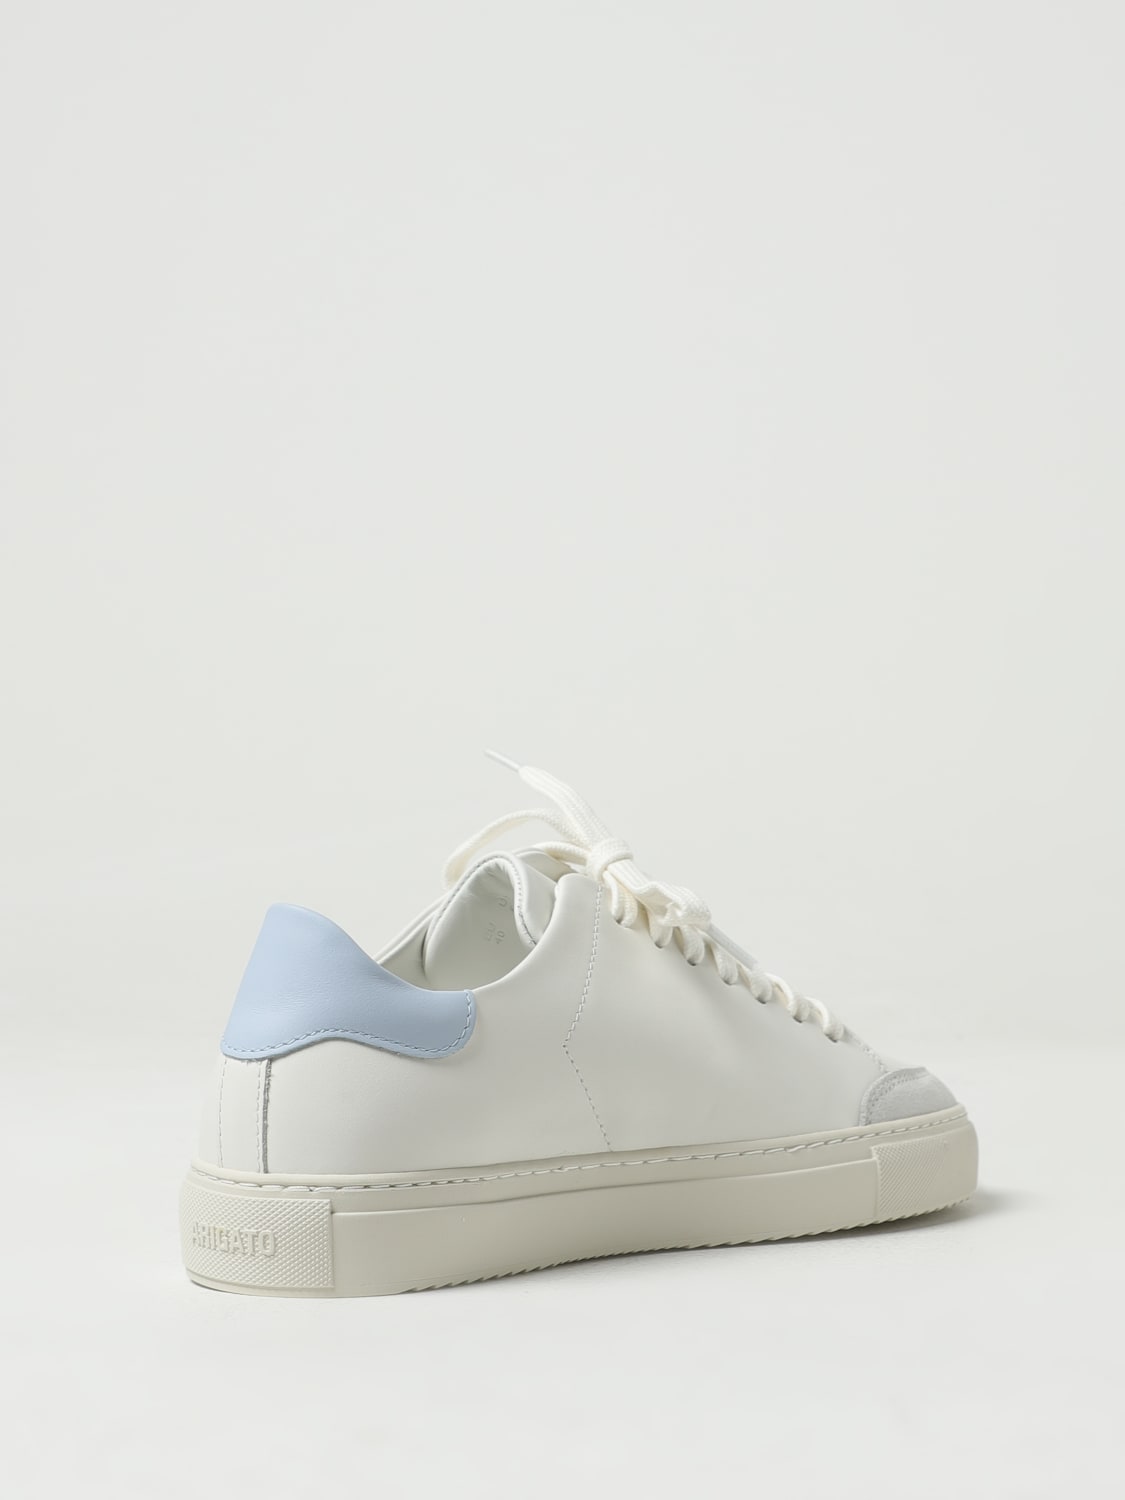 AXEL ARIGATO: Sneakers woman - White | AXEL ARIGATO sneakers F1741002 ...